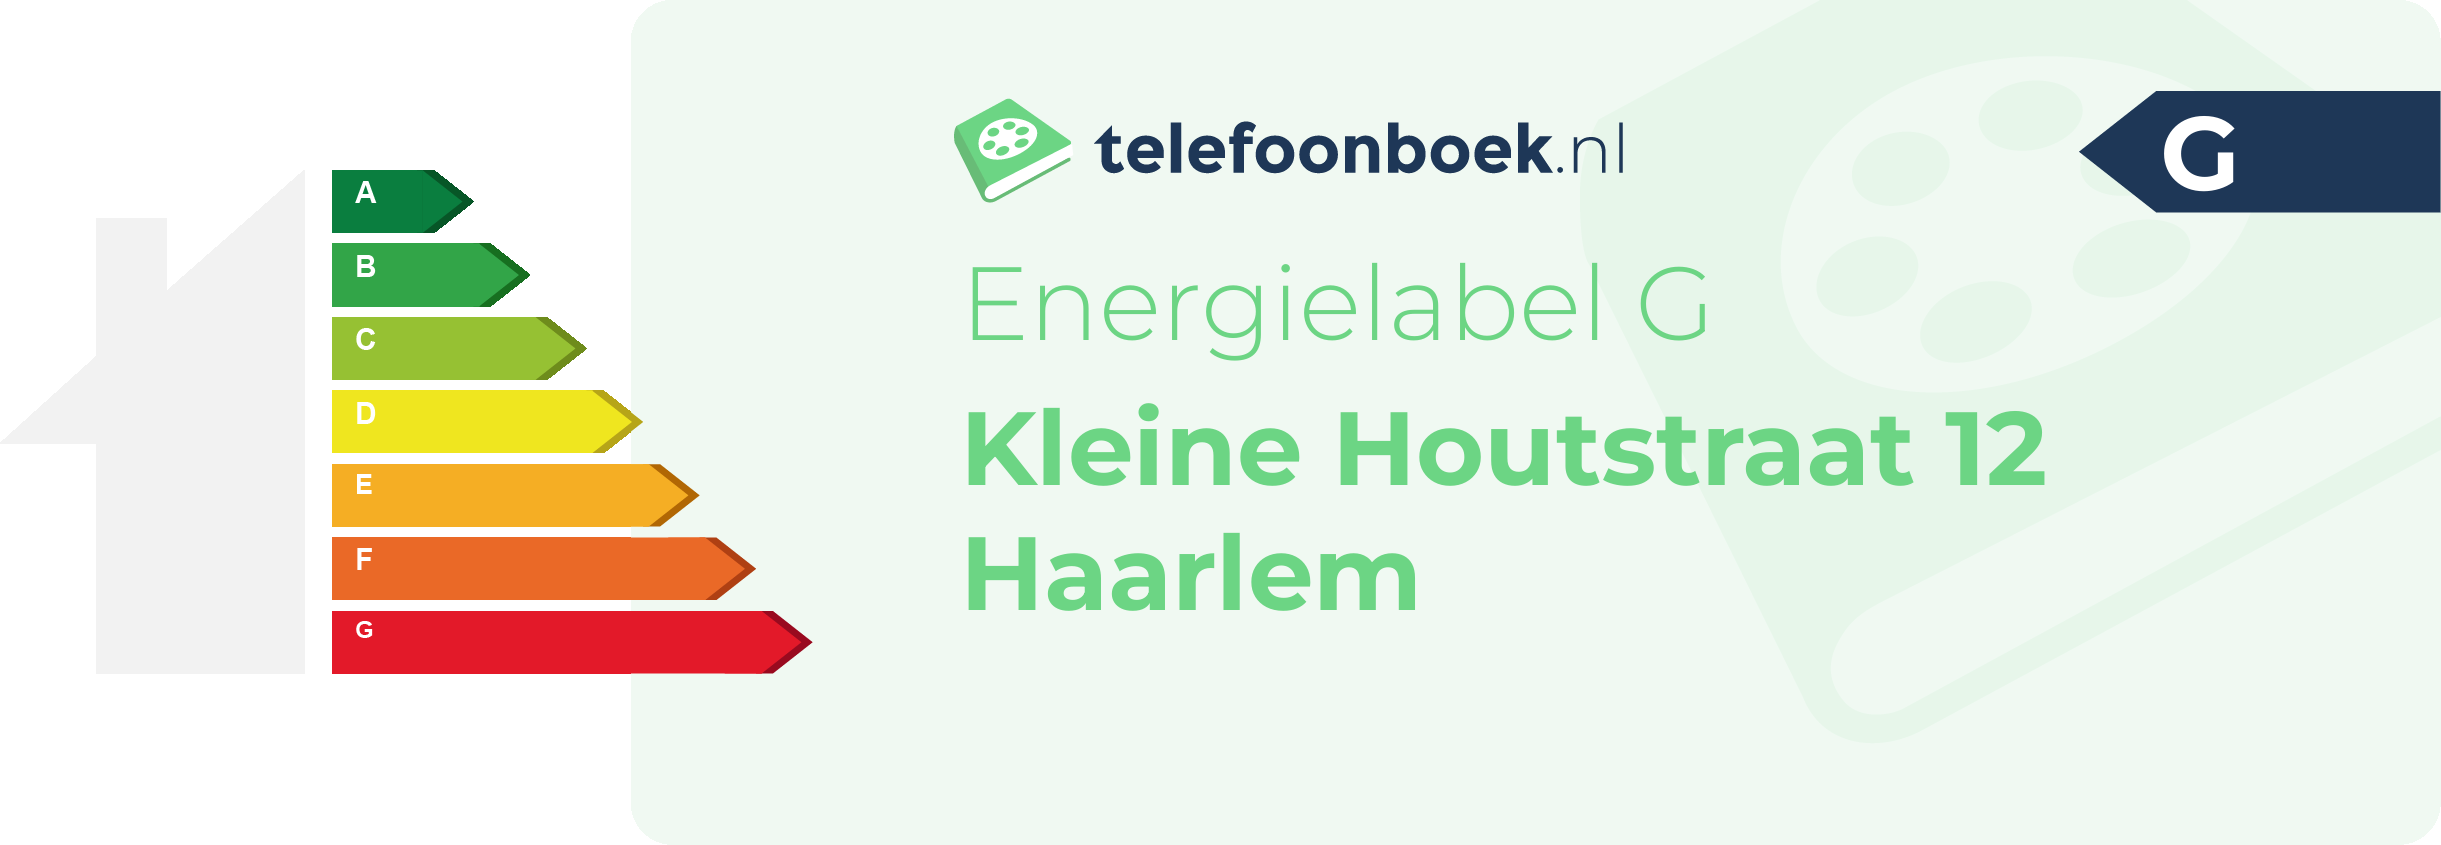 Energielabel Kleine Houtstraat 12 Haarlem